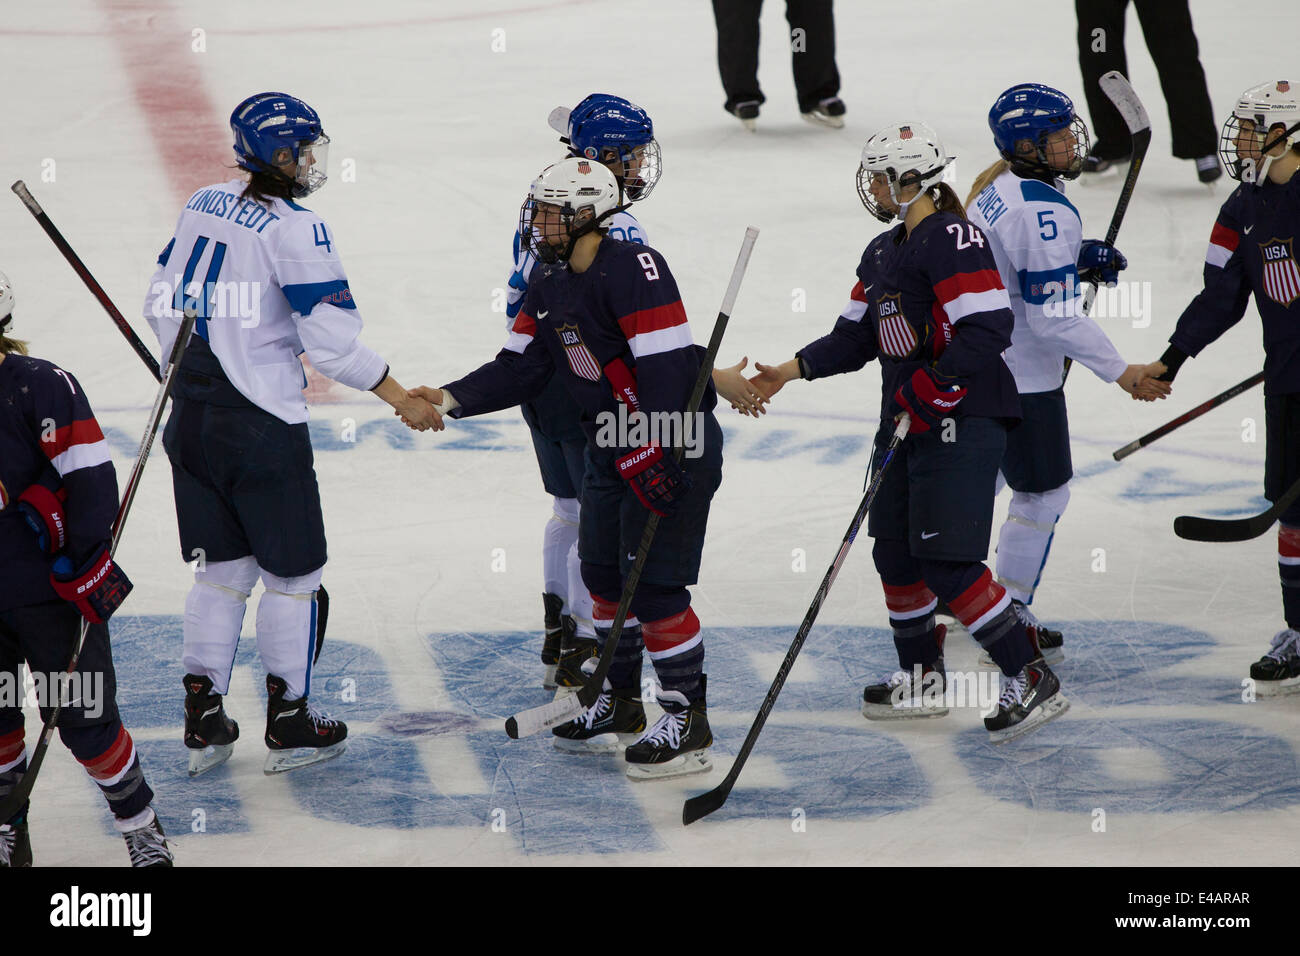 Le hockey sur glace féminin-USA-FIN aux Jeux Olympiques d'hiver de Sotchi en 2014, Banque D'Images